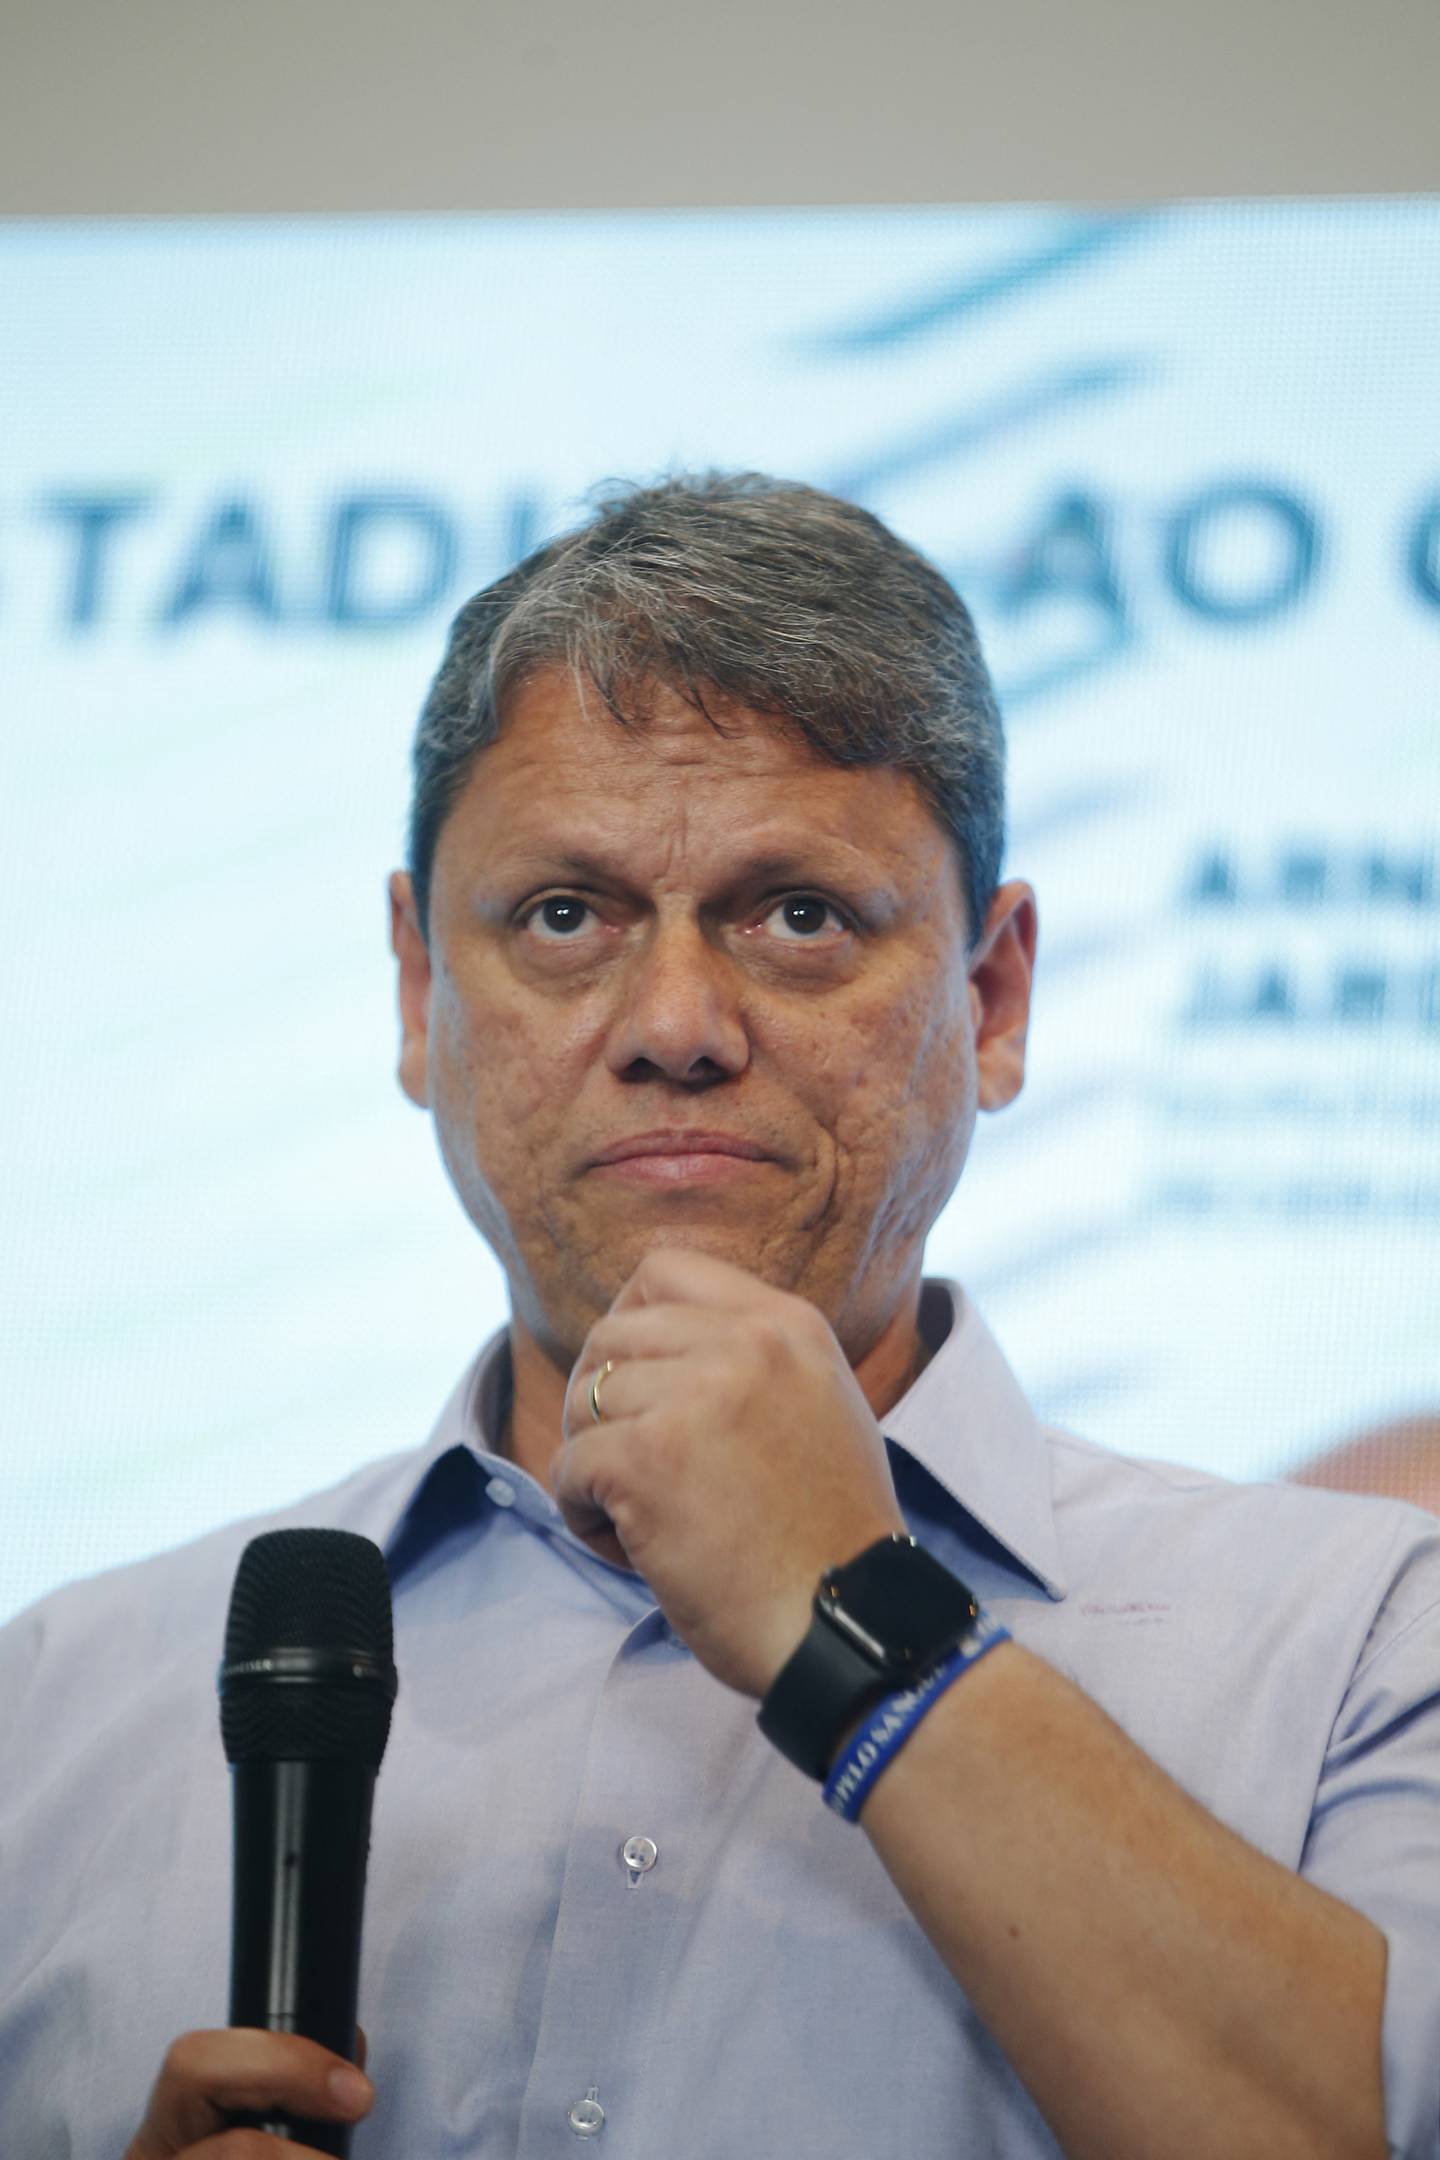 El gobernador de Sao Paulo, Tarcisio de Freitas, defendió la operación policial, afirmando que está 'tranquilo' con lo que se está haciendo y desestimó las críticas, incluso frente a instancias internacionales como la ONU.